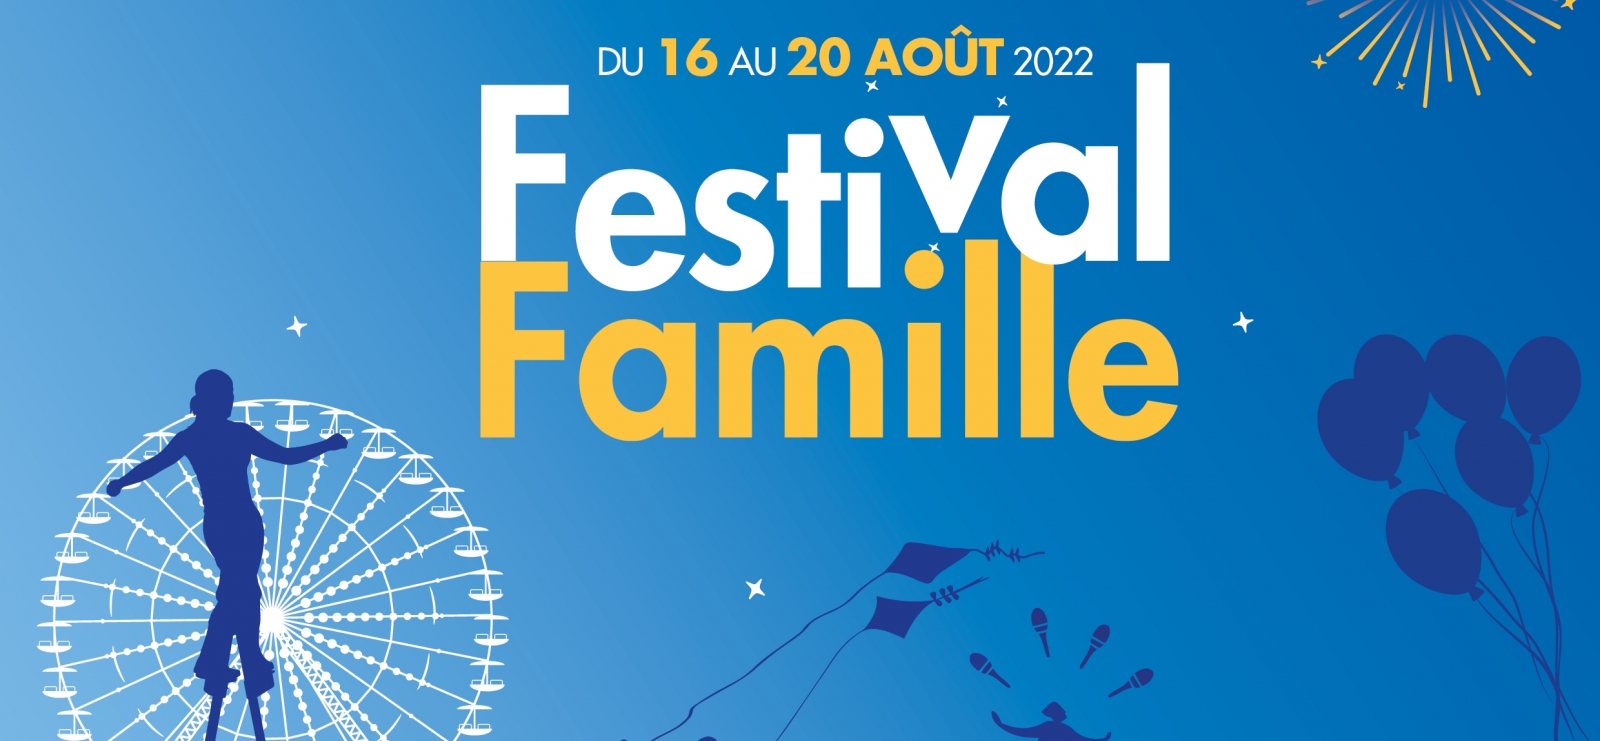 'Festival Famille' - Familienfest